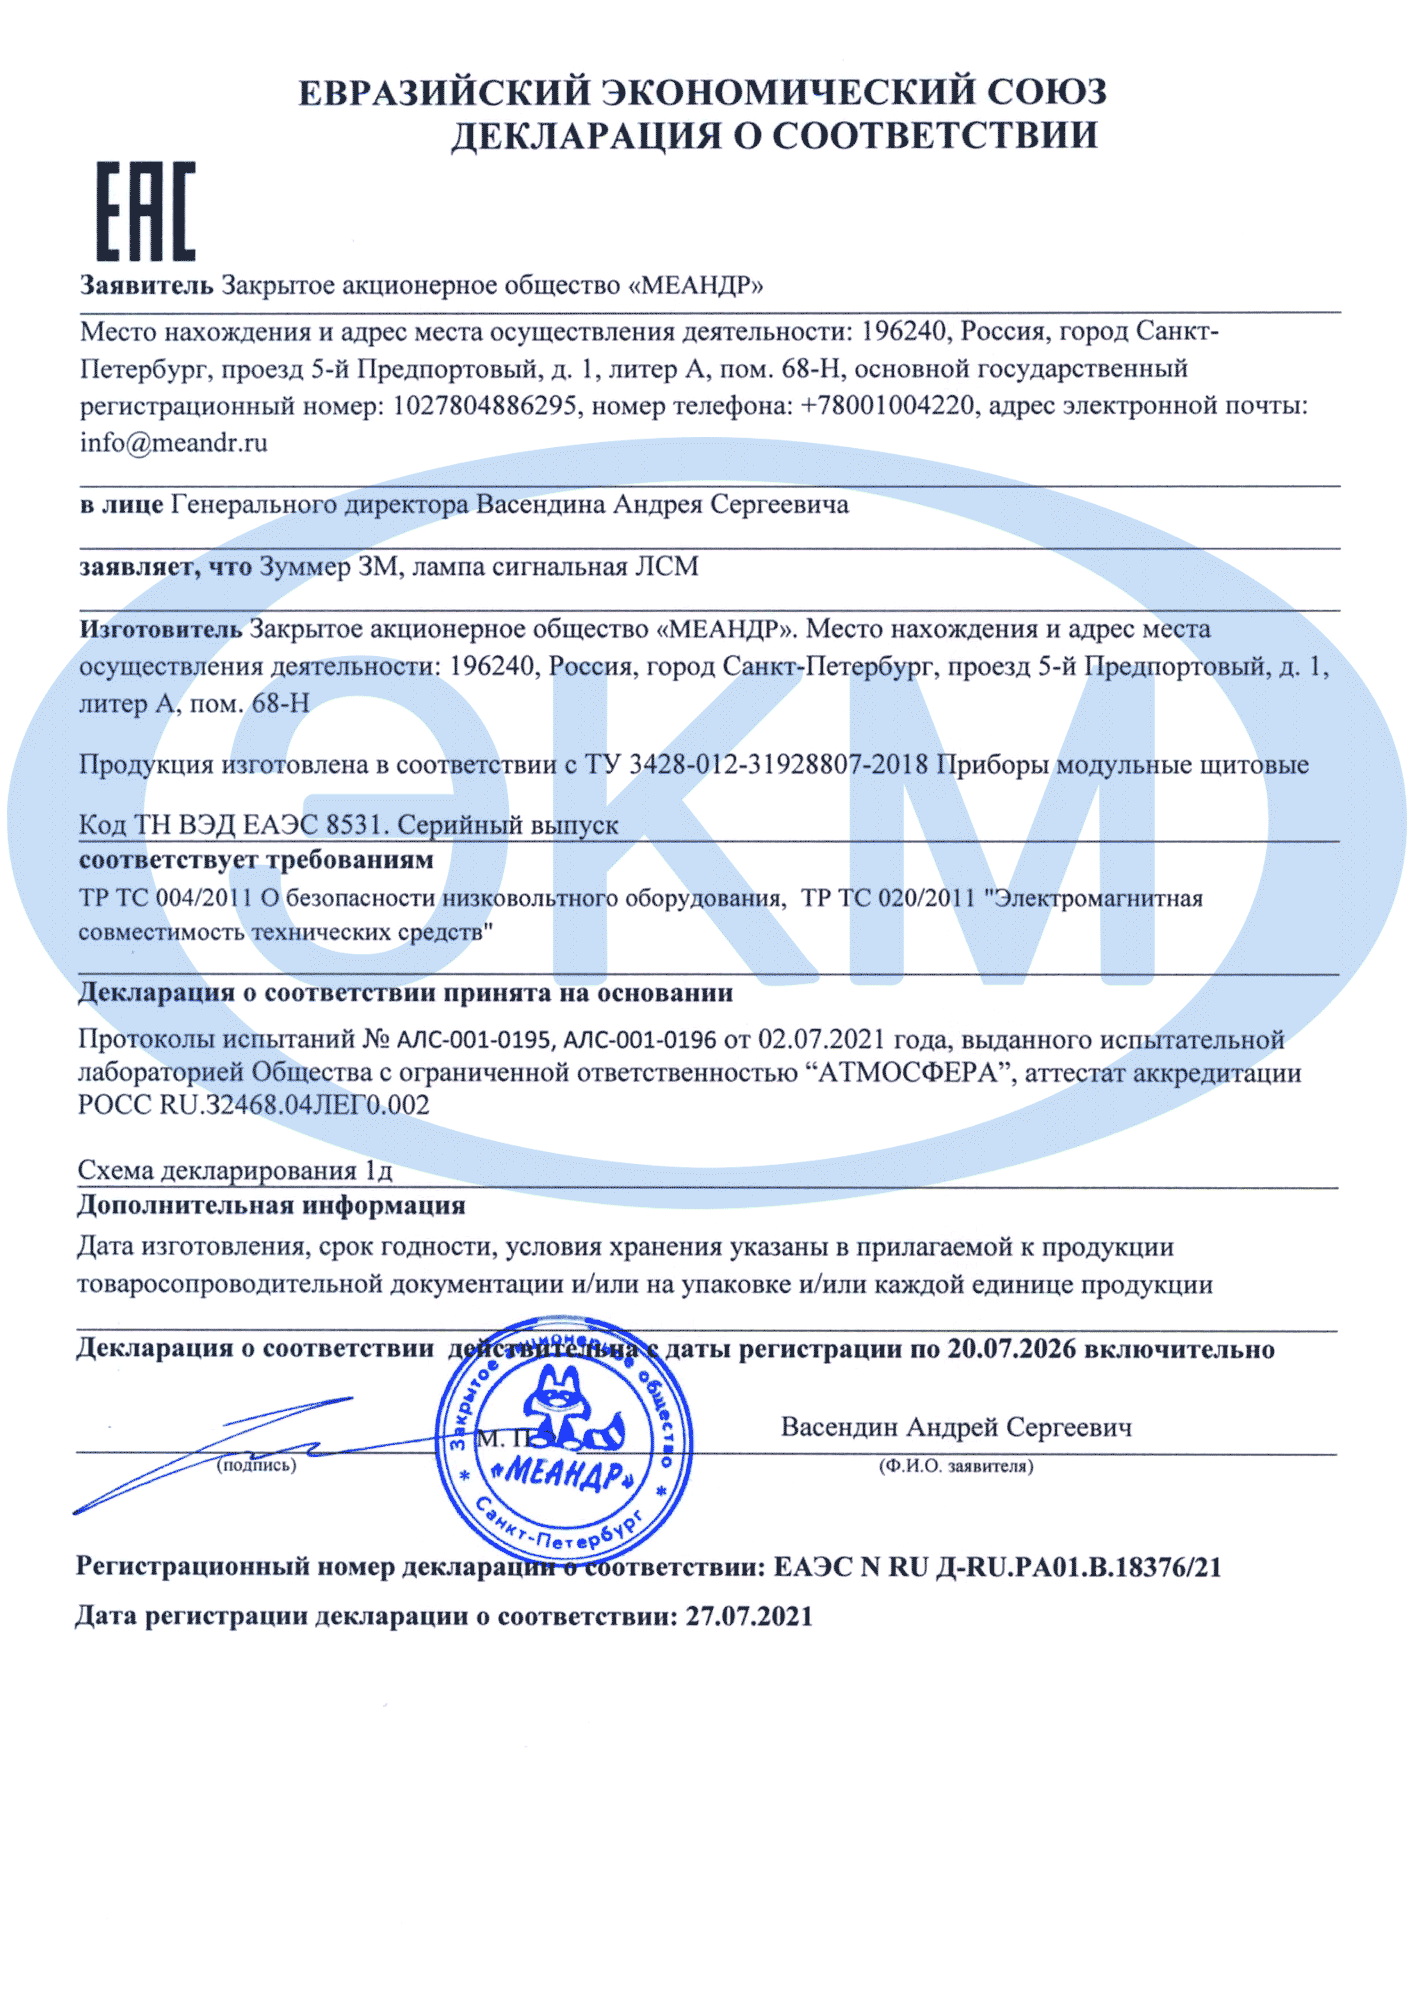 Сертификат ЕАС на ЗМ, ЛСМ